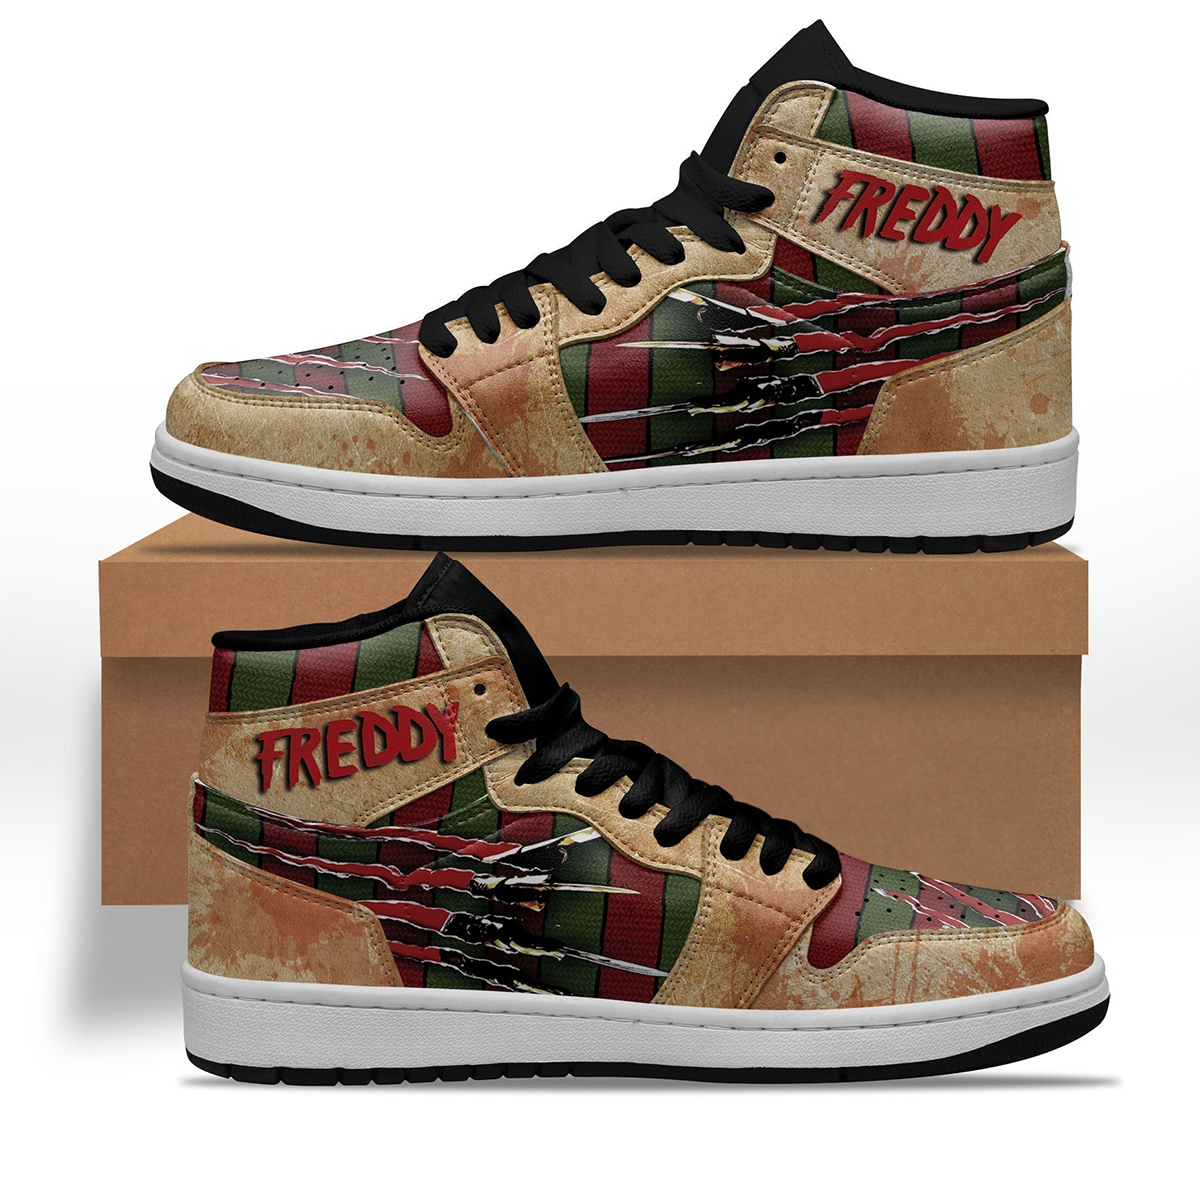 Freddy Krueger Sneakers For A Nightmare on Elm Street Fans